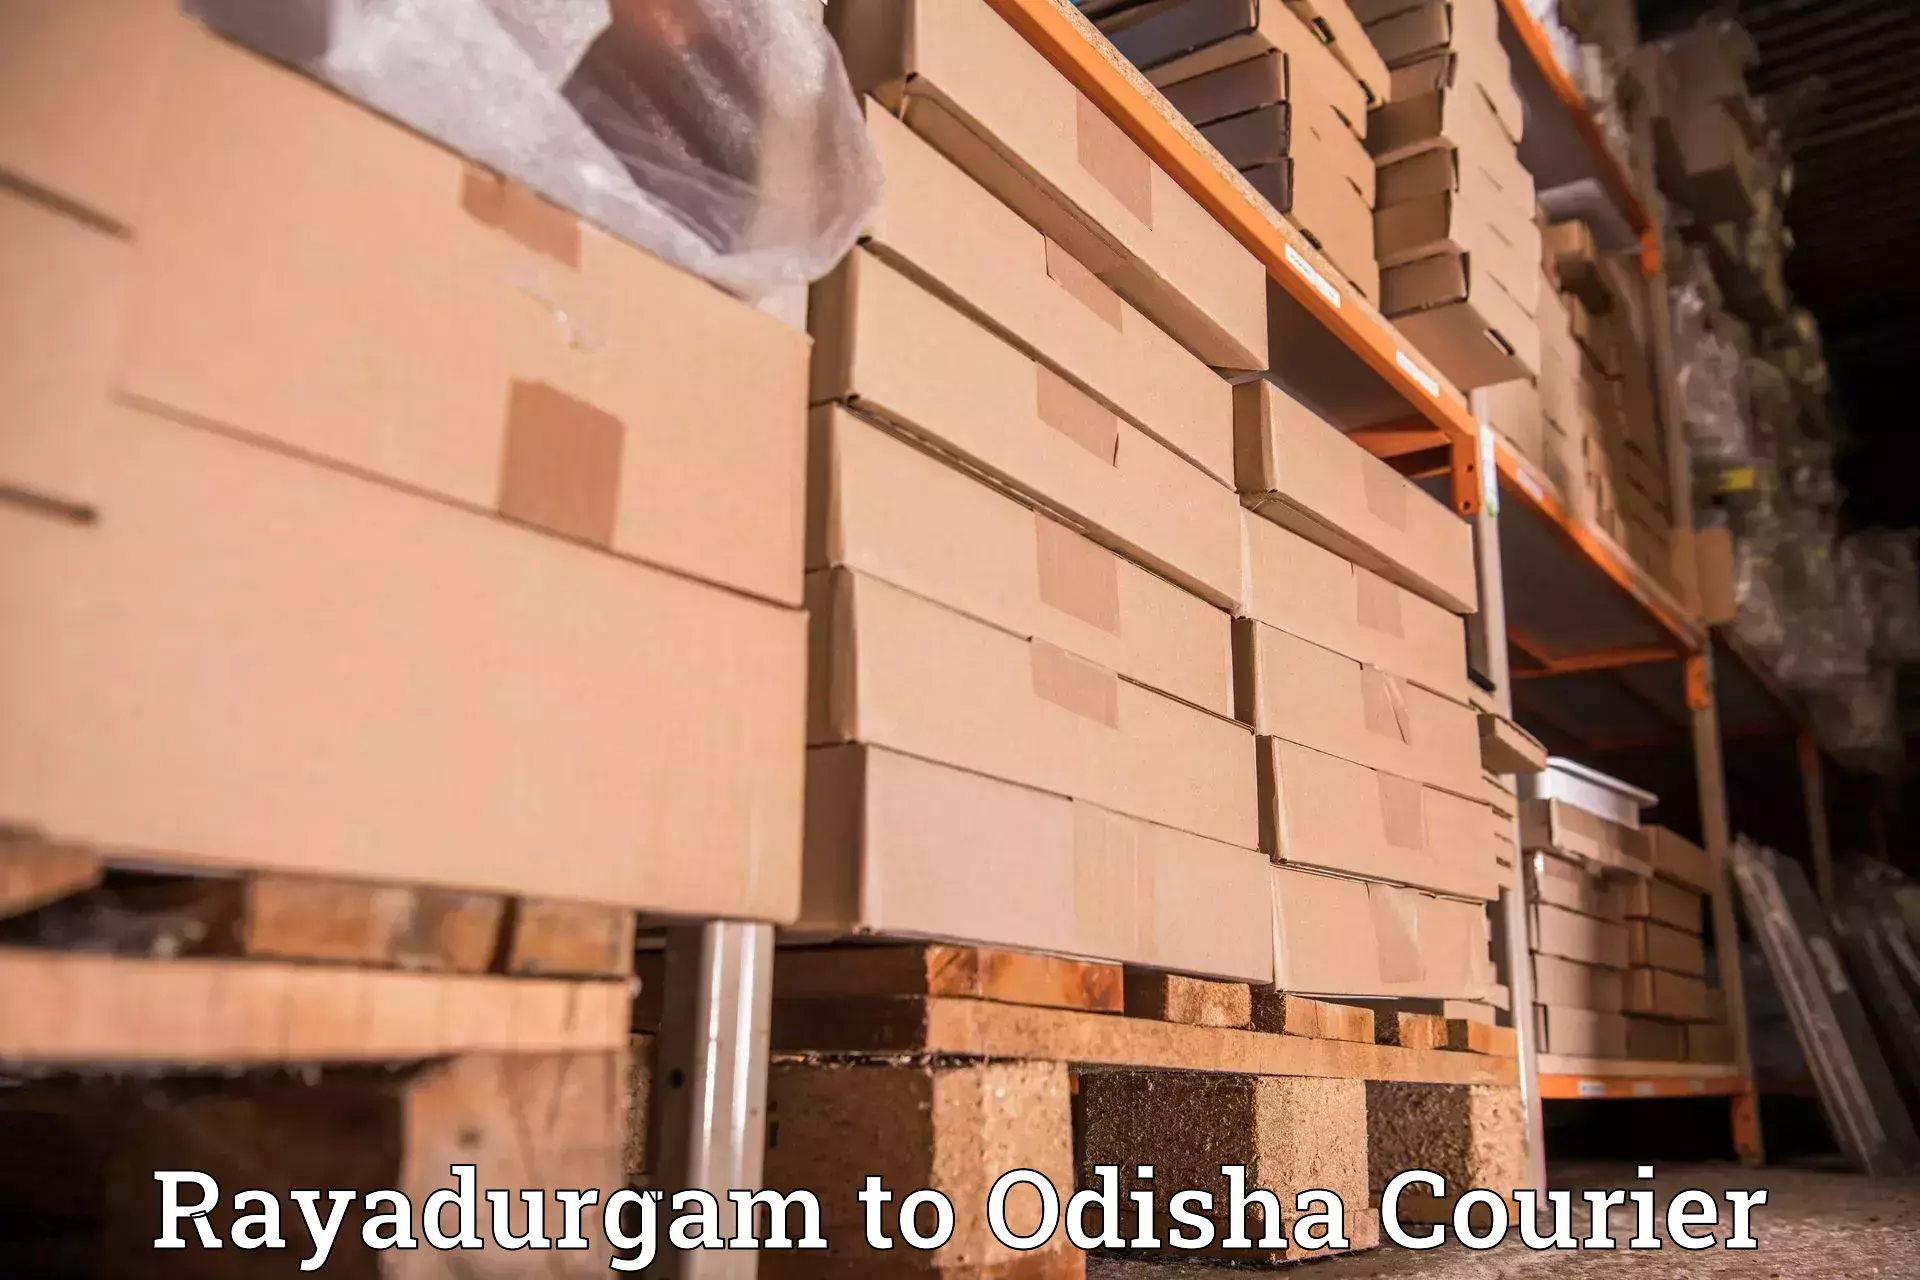 Efficient freight service Rayadurgam to Brajrajnagar